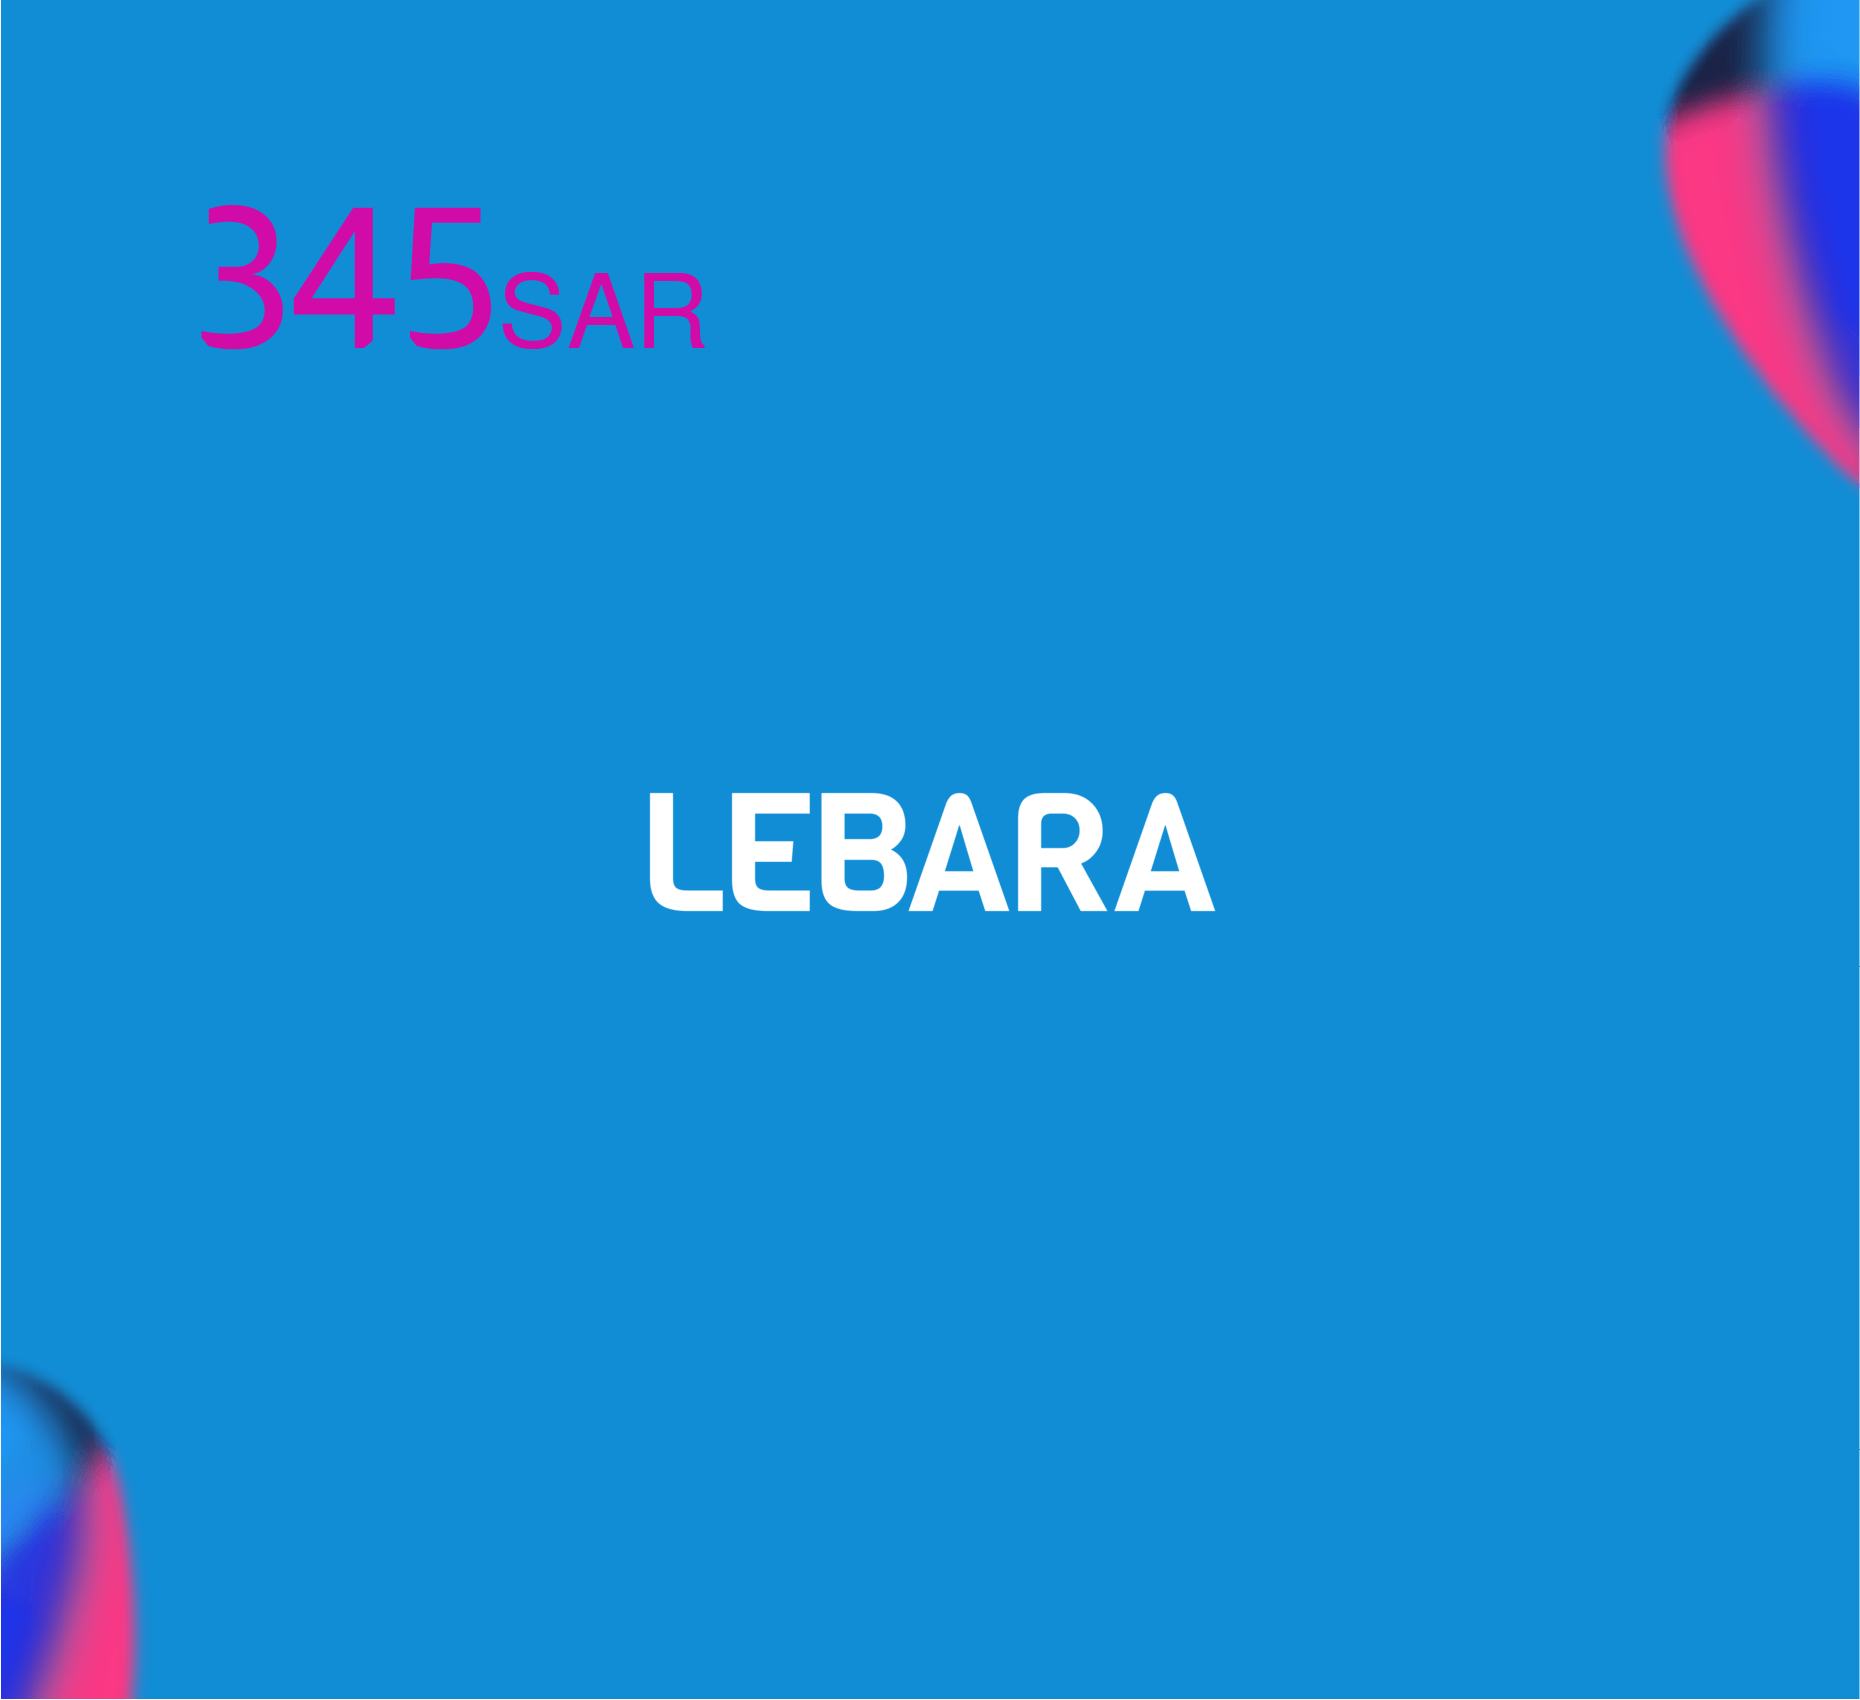 Lebara Recharge Card SR 345